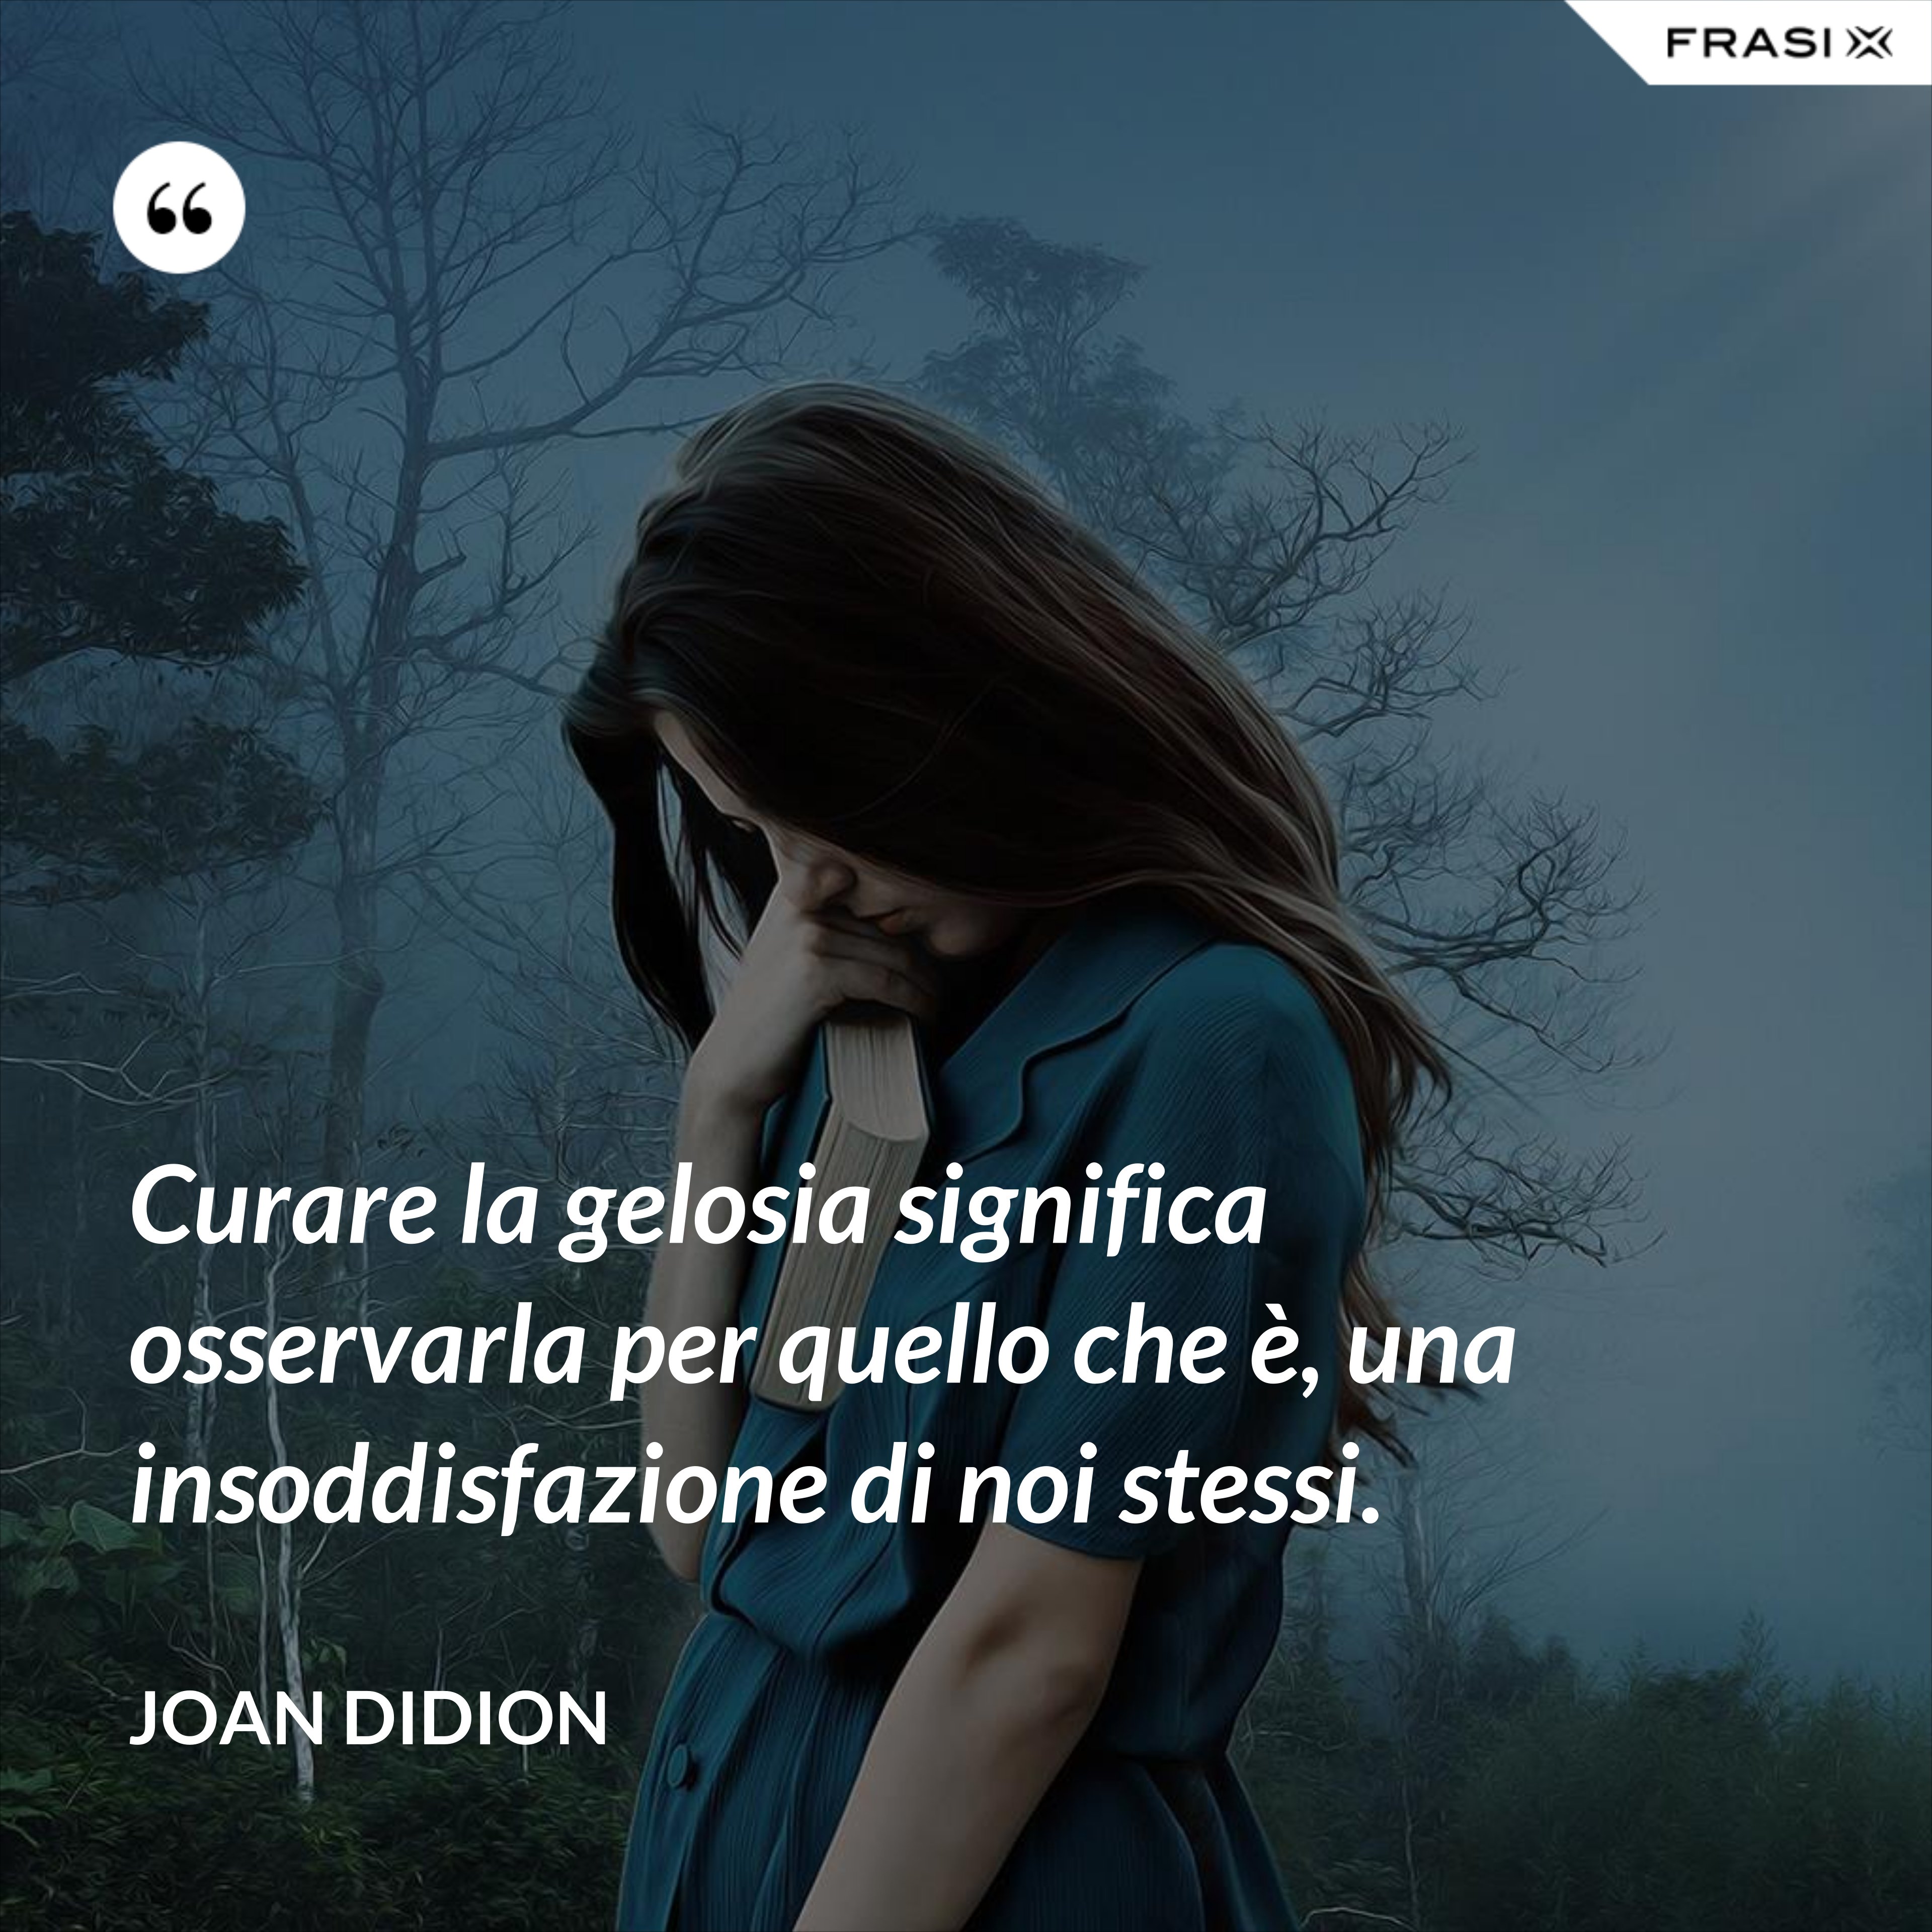 Curare la gelosia significa osservarla per quello che è, una insoddisfazione di noi stessi. - Joan Didion